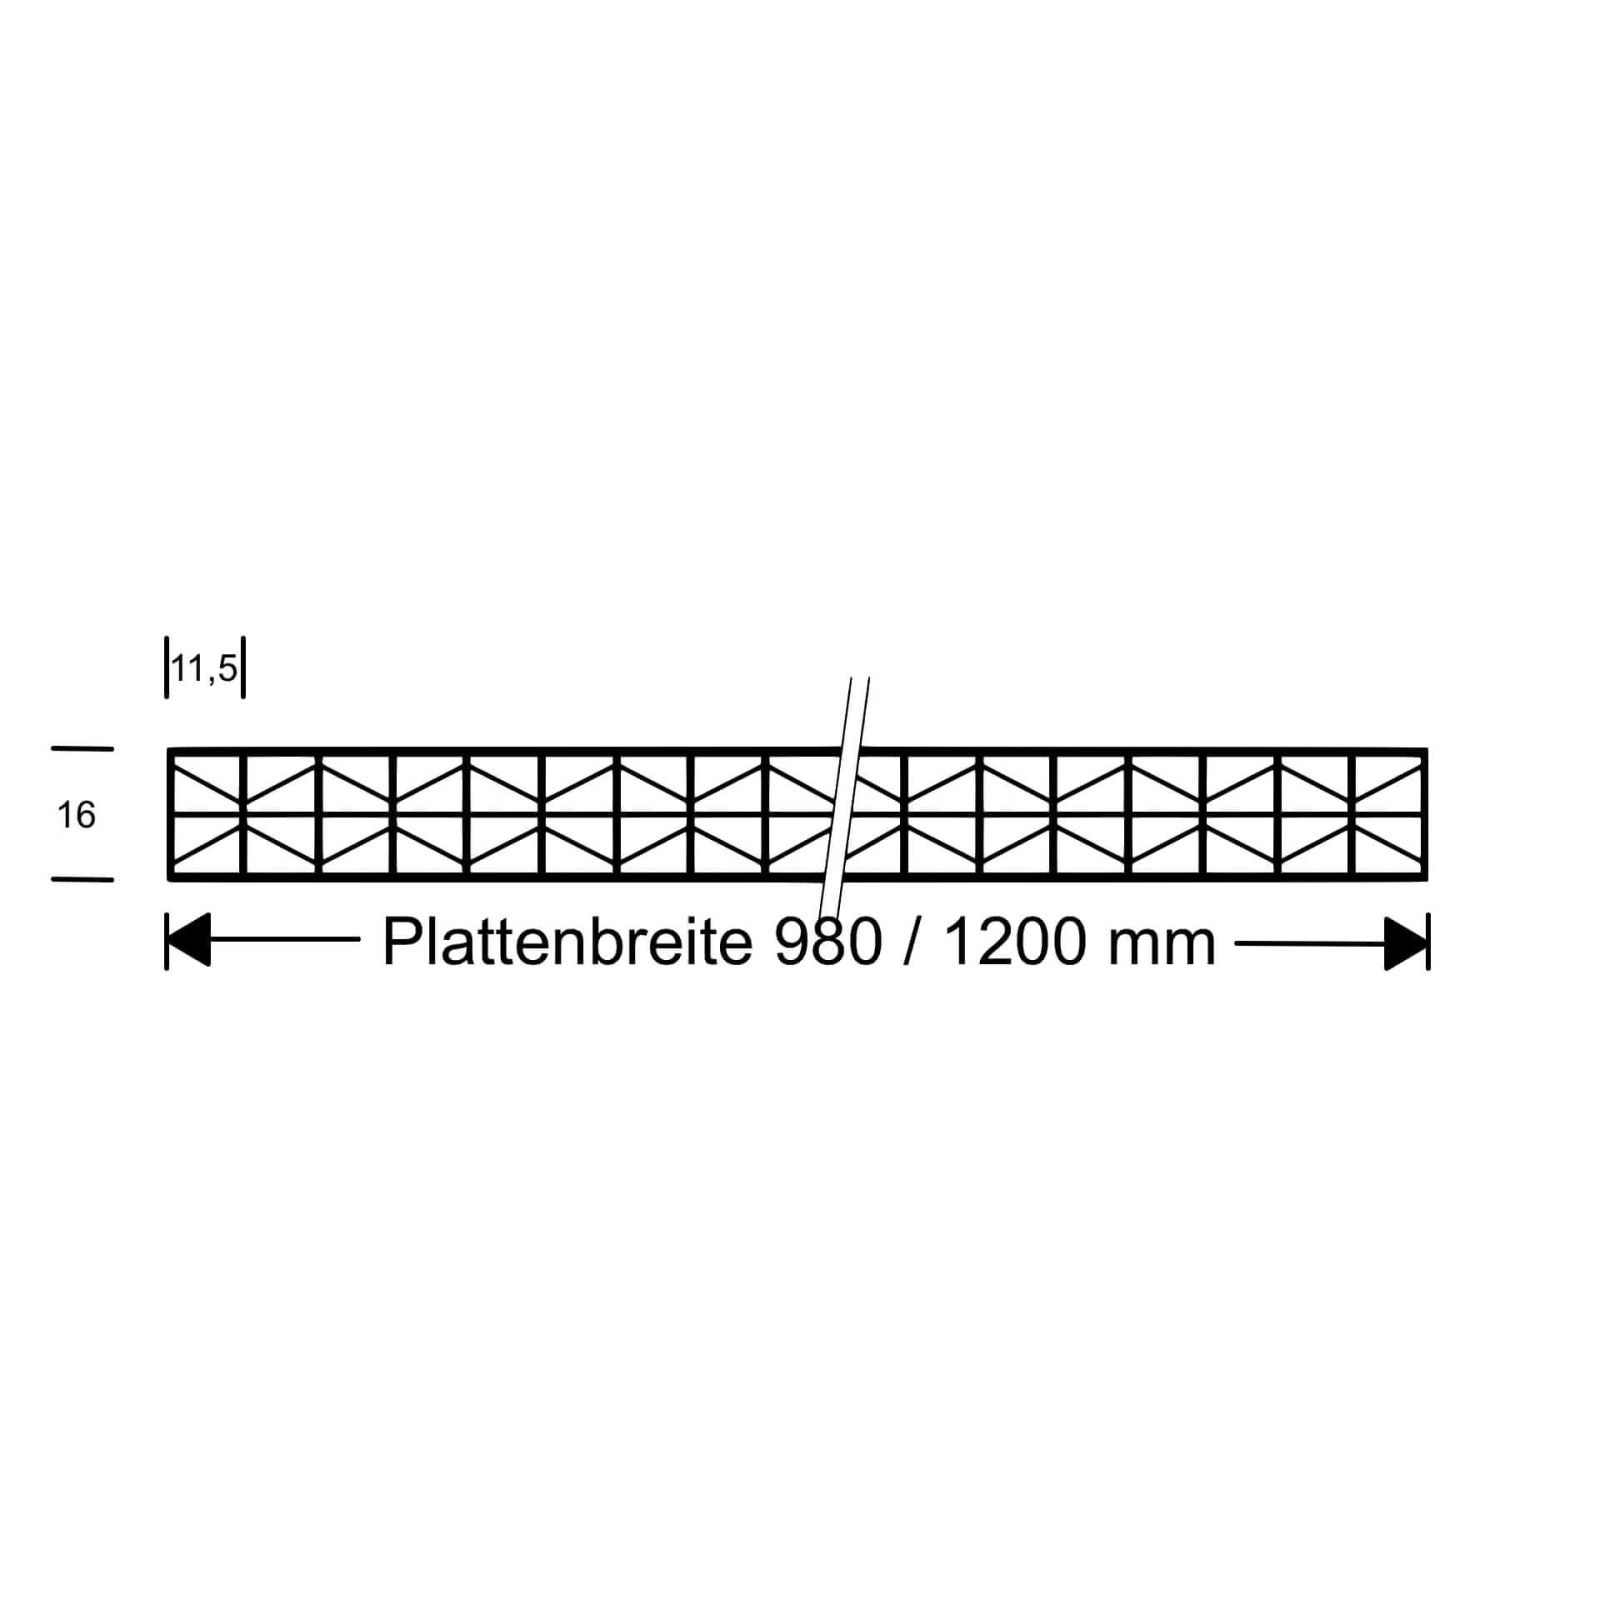 Polycarbonat Stegplatte | 16 mm | Profil Zevener Sprosse | Sparpaket | Plattenbreite 1200 mm | Opal Weiß | Extra stark | Breite 3,79 m | Länge 2,00 m #10